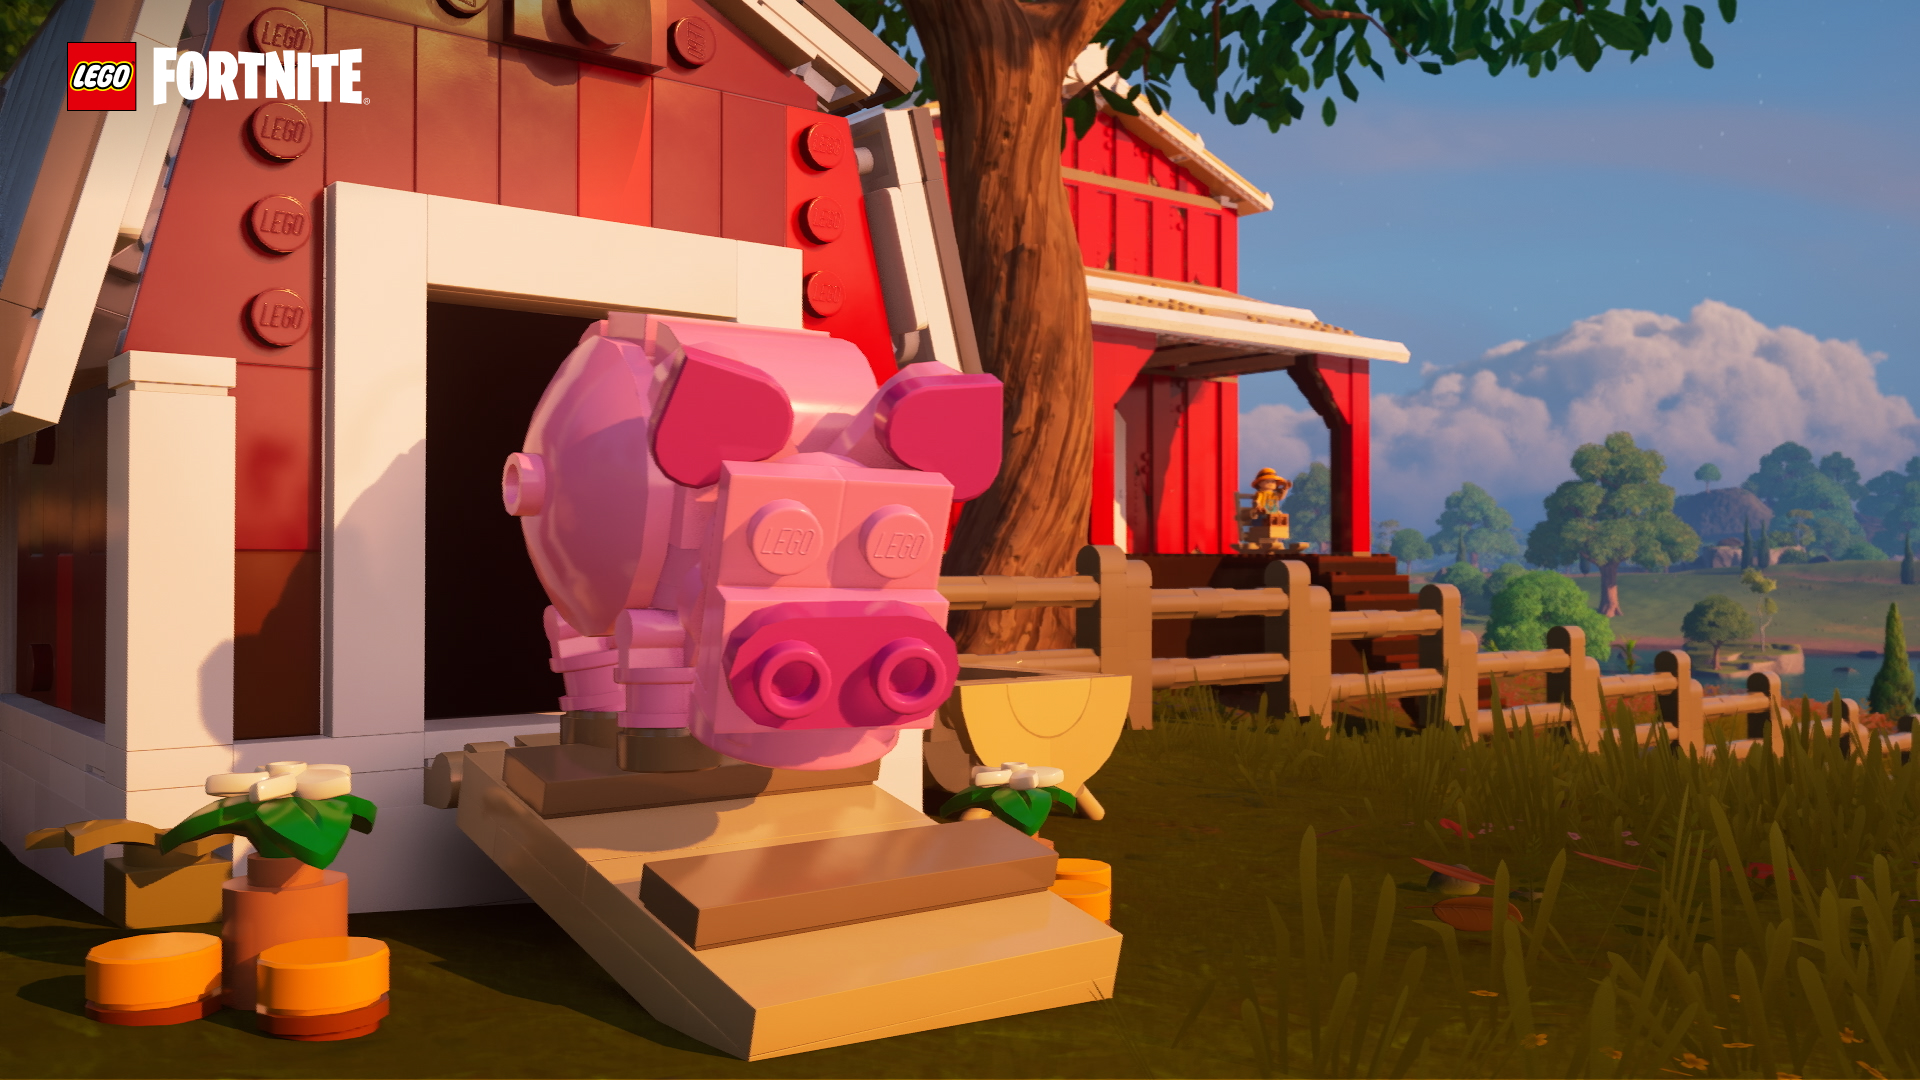 LEGO Fortnite Casa de cerdos